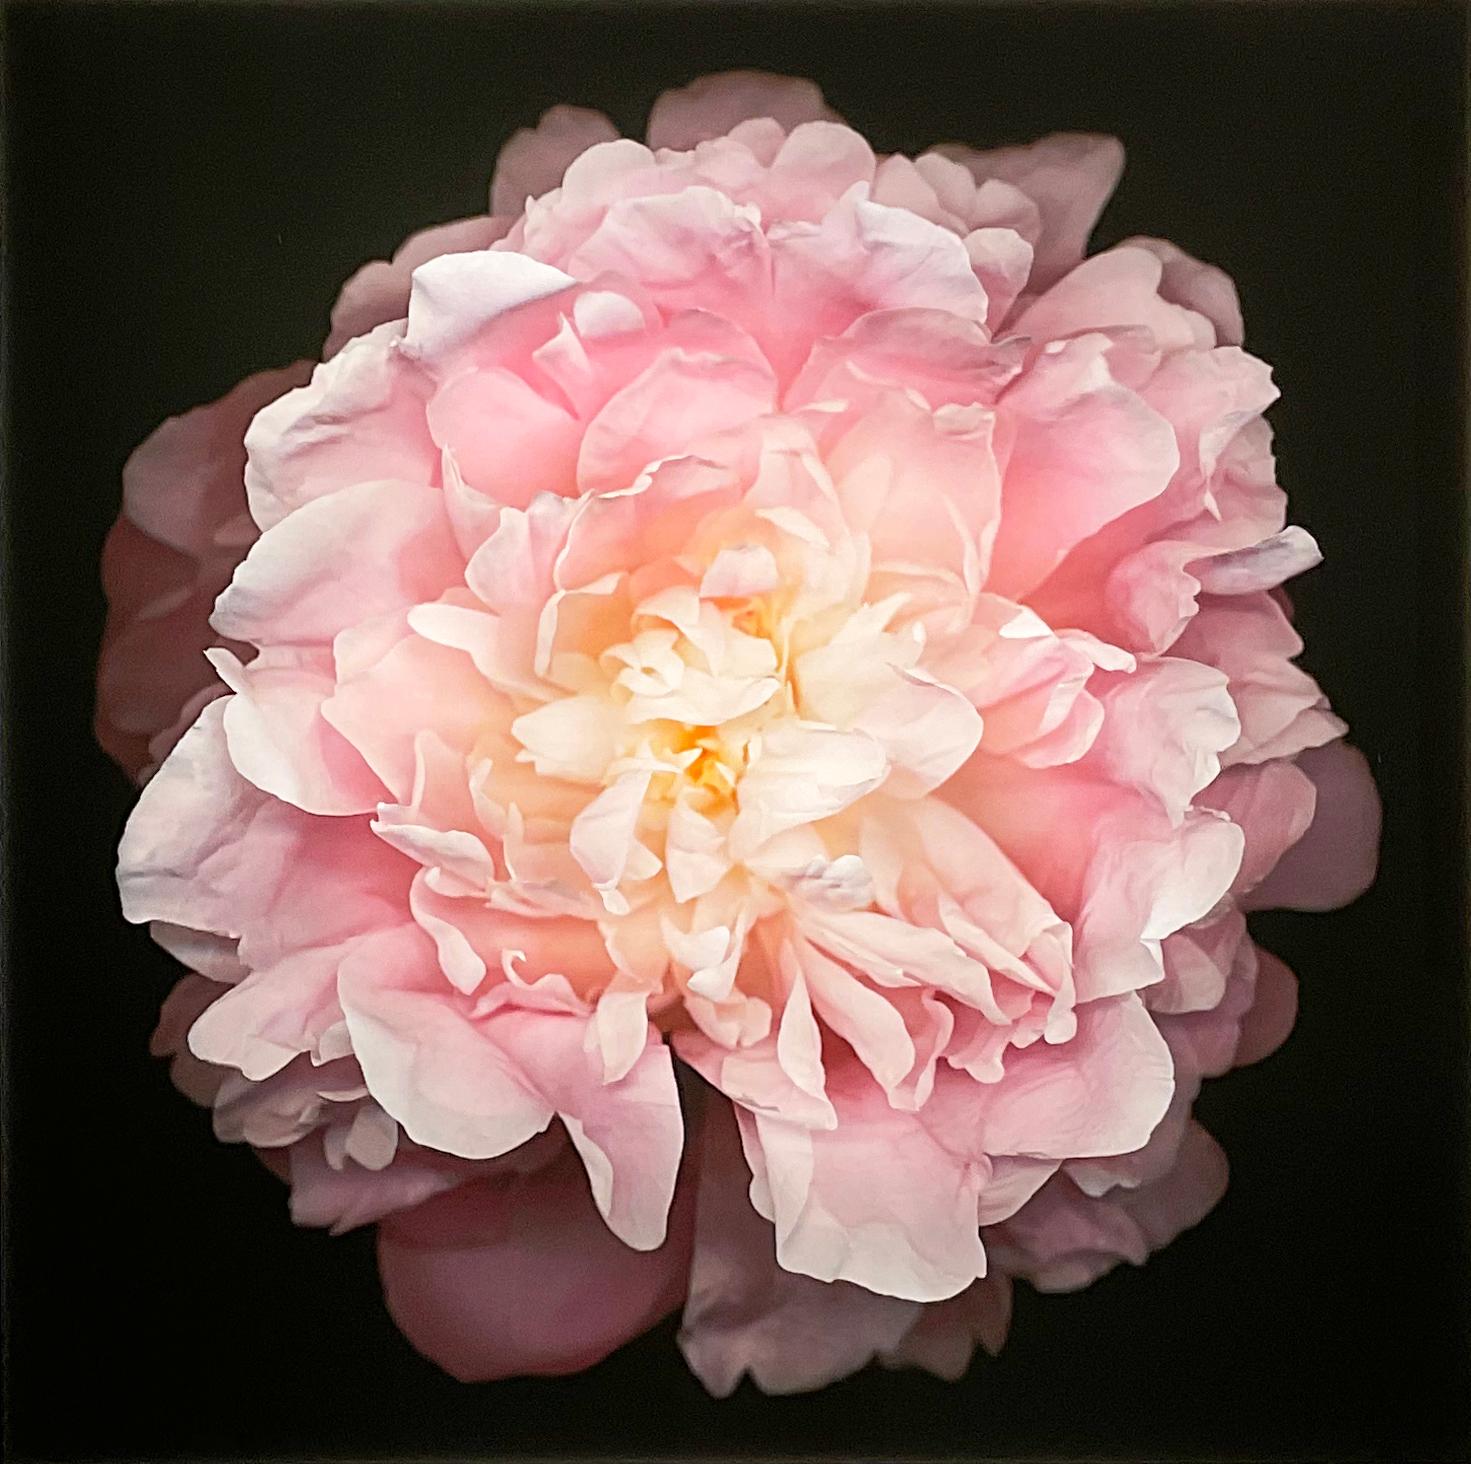 Chad Kleitsch Still-Life Photograph – Nr. 47 (Fragmentierte Blumenstilllebenfotografie einer rosa Pfingstrose auf Schwarz) 